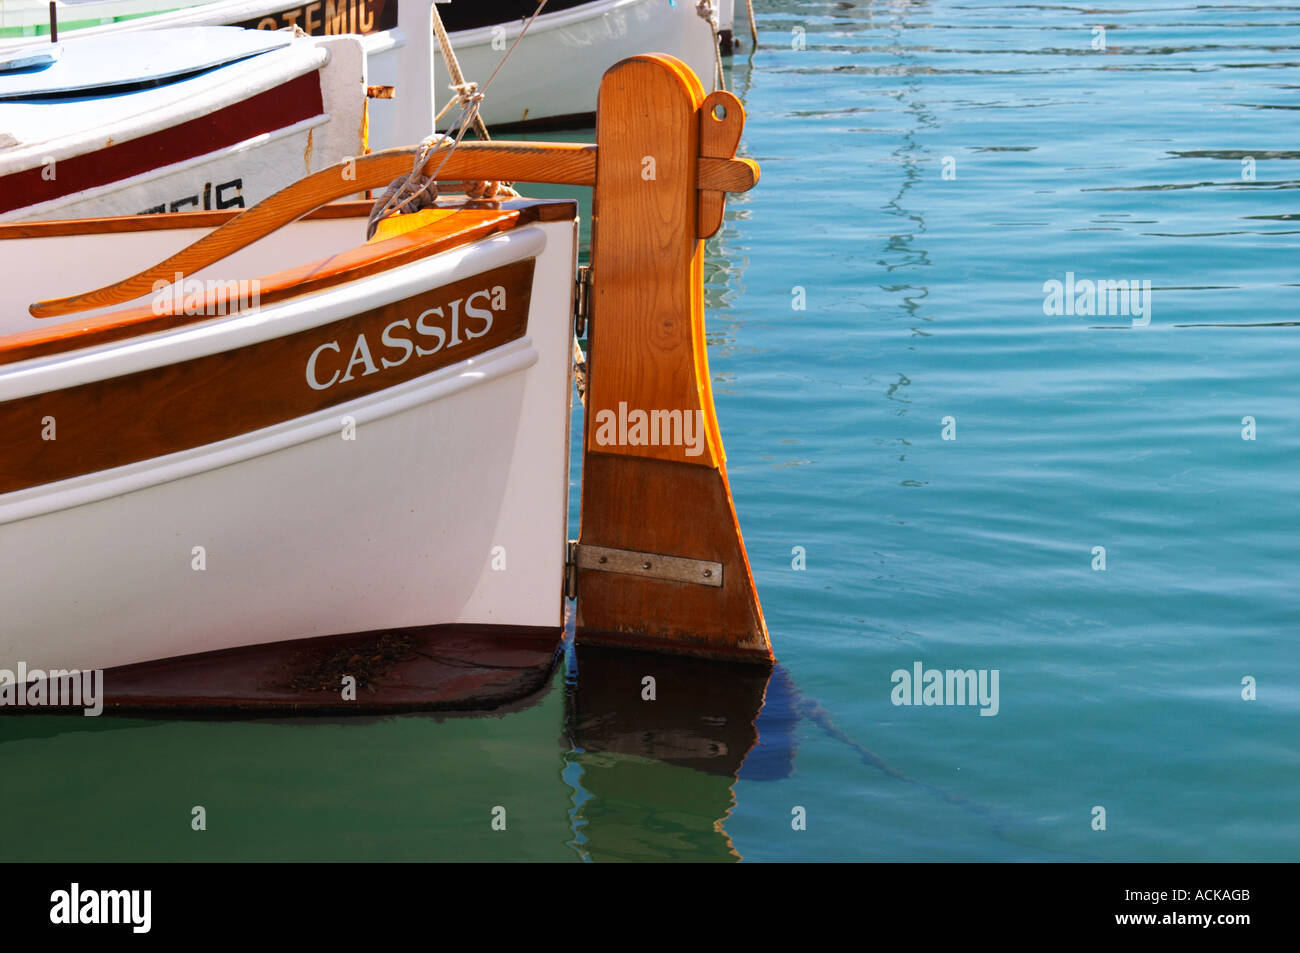 Im Hafen von Cassis Dorf. Ein traditionelles Boot mit hölzernen Ruder gekennzeichnet mit dem Namen Cassis. Weiß lackiert. CASSI Stockfoto